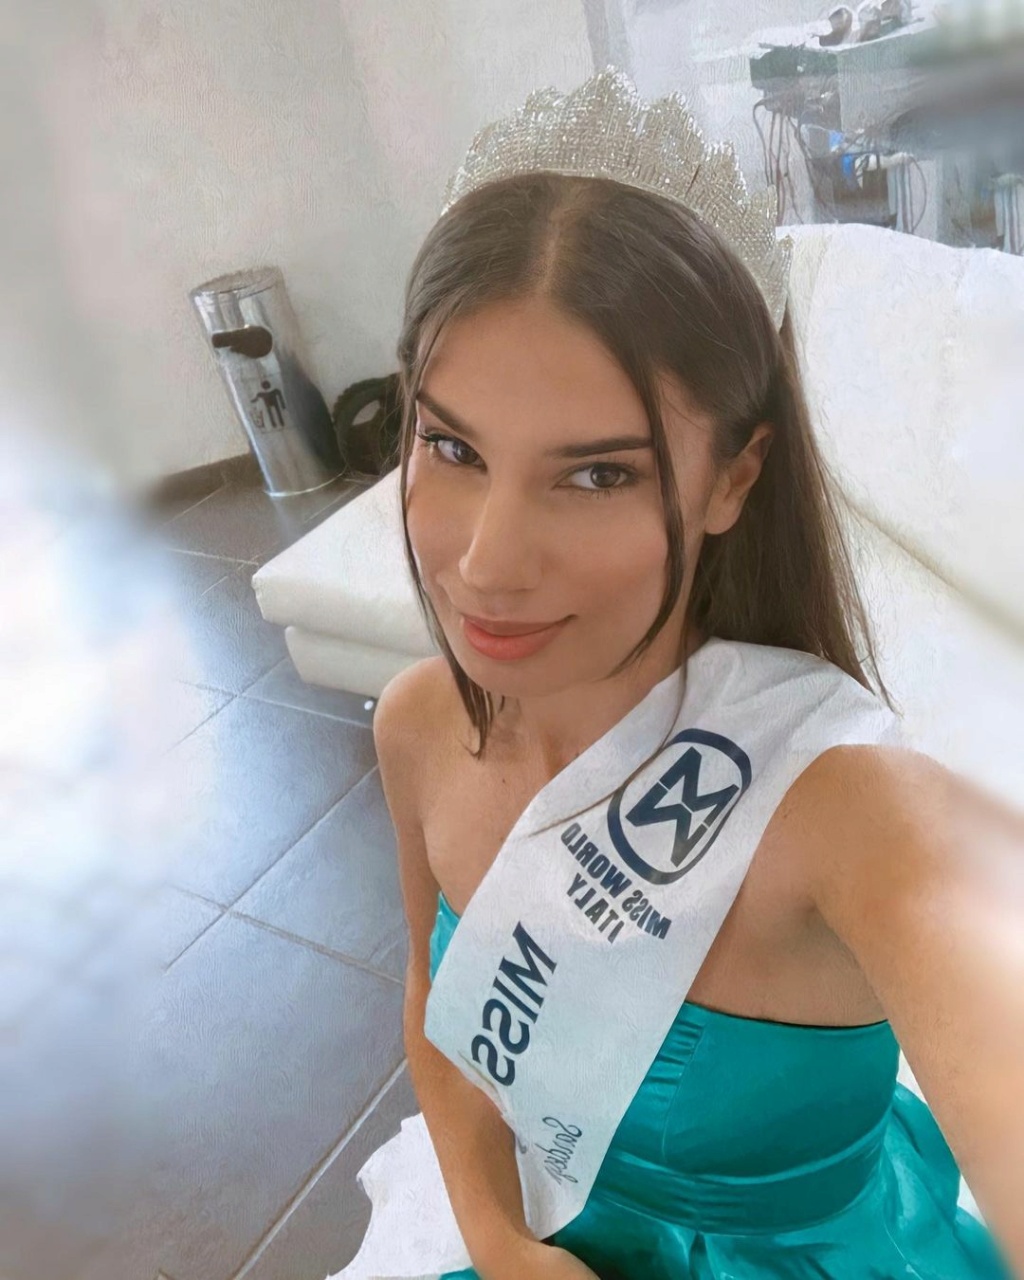 Miss Mondo Italia 2020/2021 is Claudia Motta - Lazio 19188810